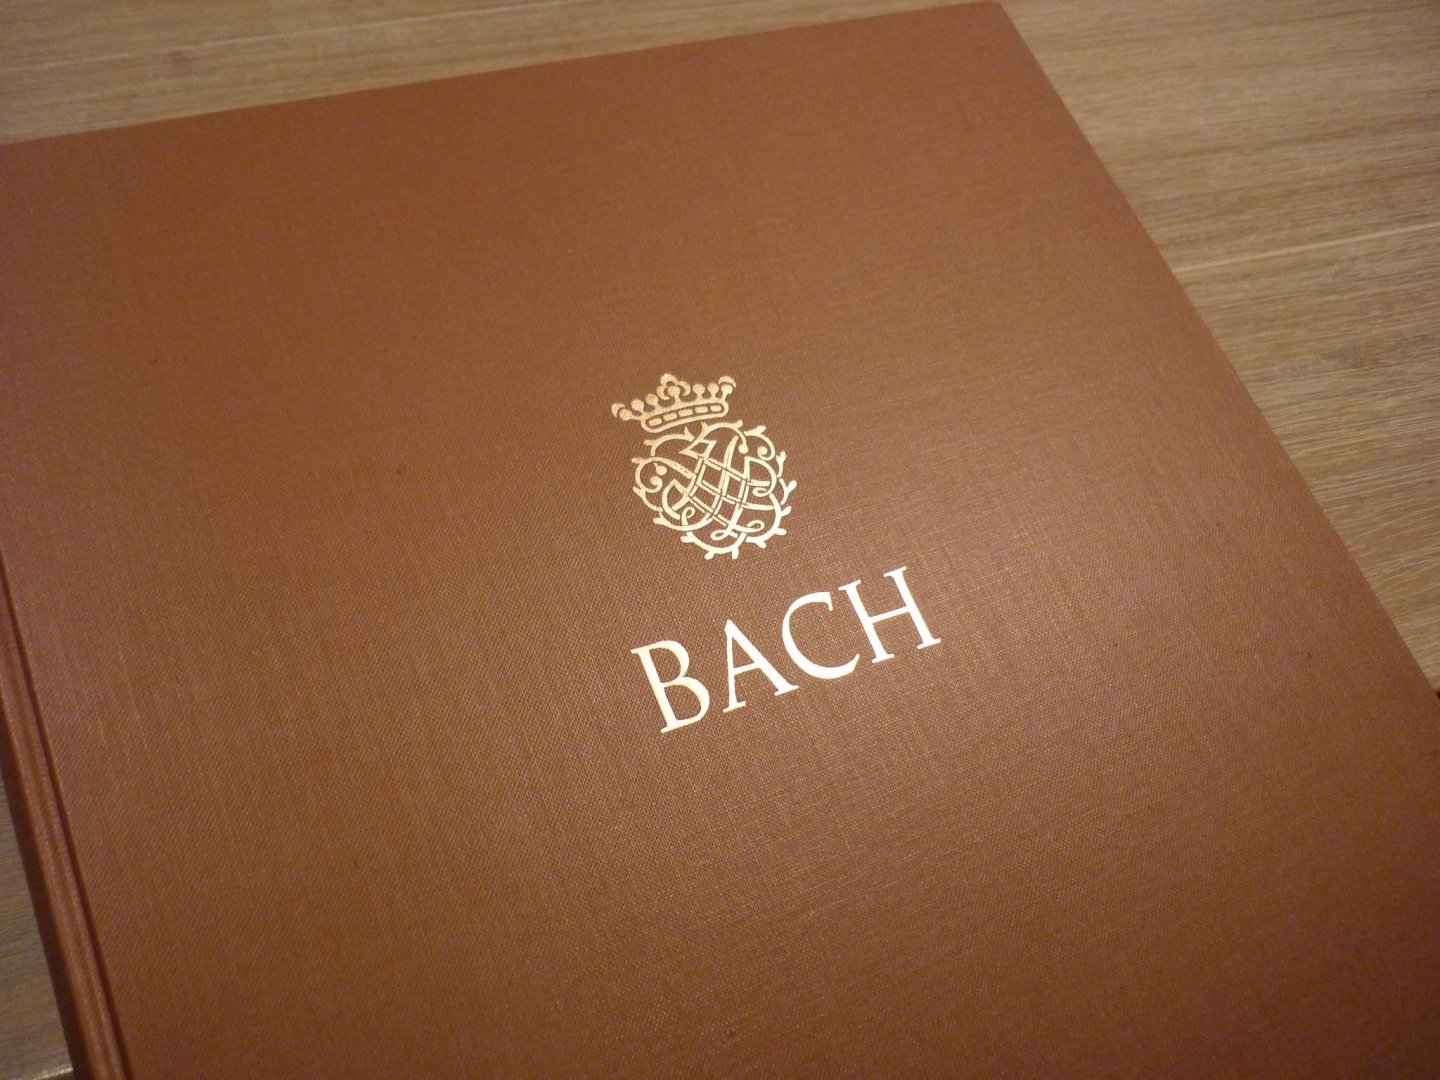 Bach; J. S. (1685-1750) - Inventionen und Sinfonien, Serie V: Klavier- und Lautenwerke - Band 3; Neue Ausgabe sämtlicher Werke